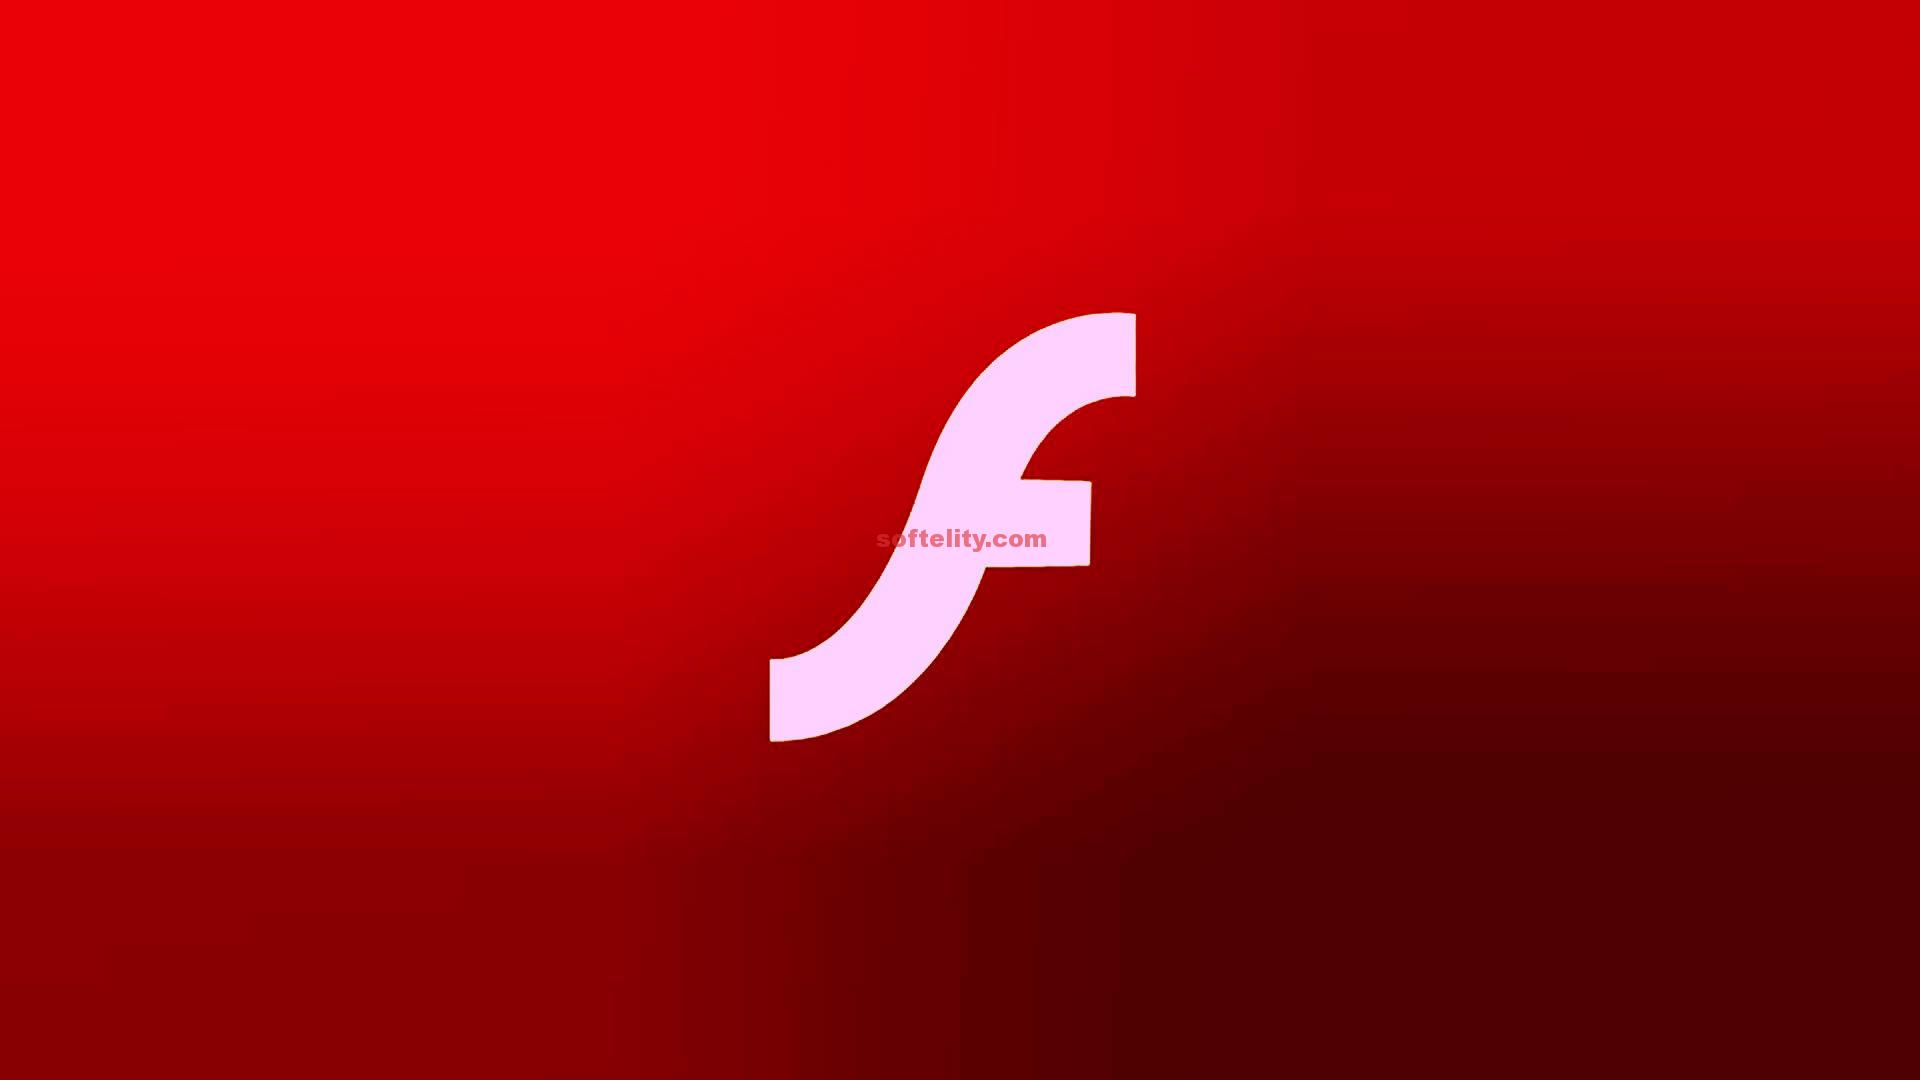 adobe flash player 10.3 mac download free